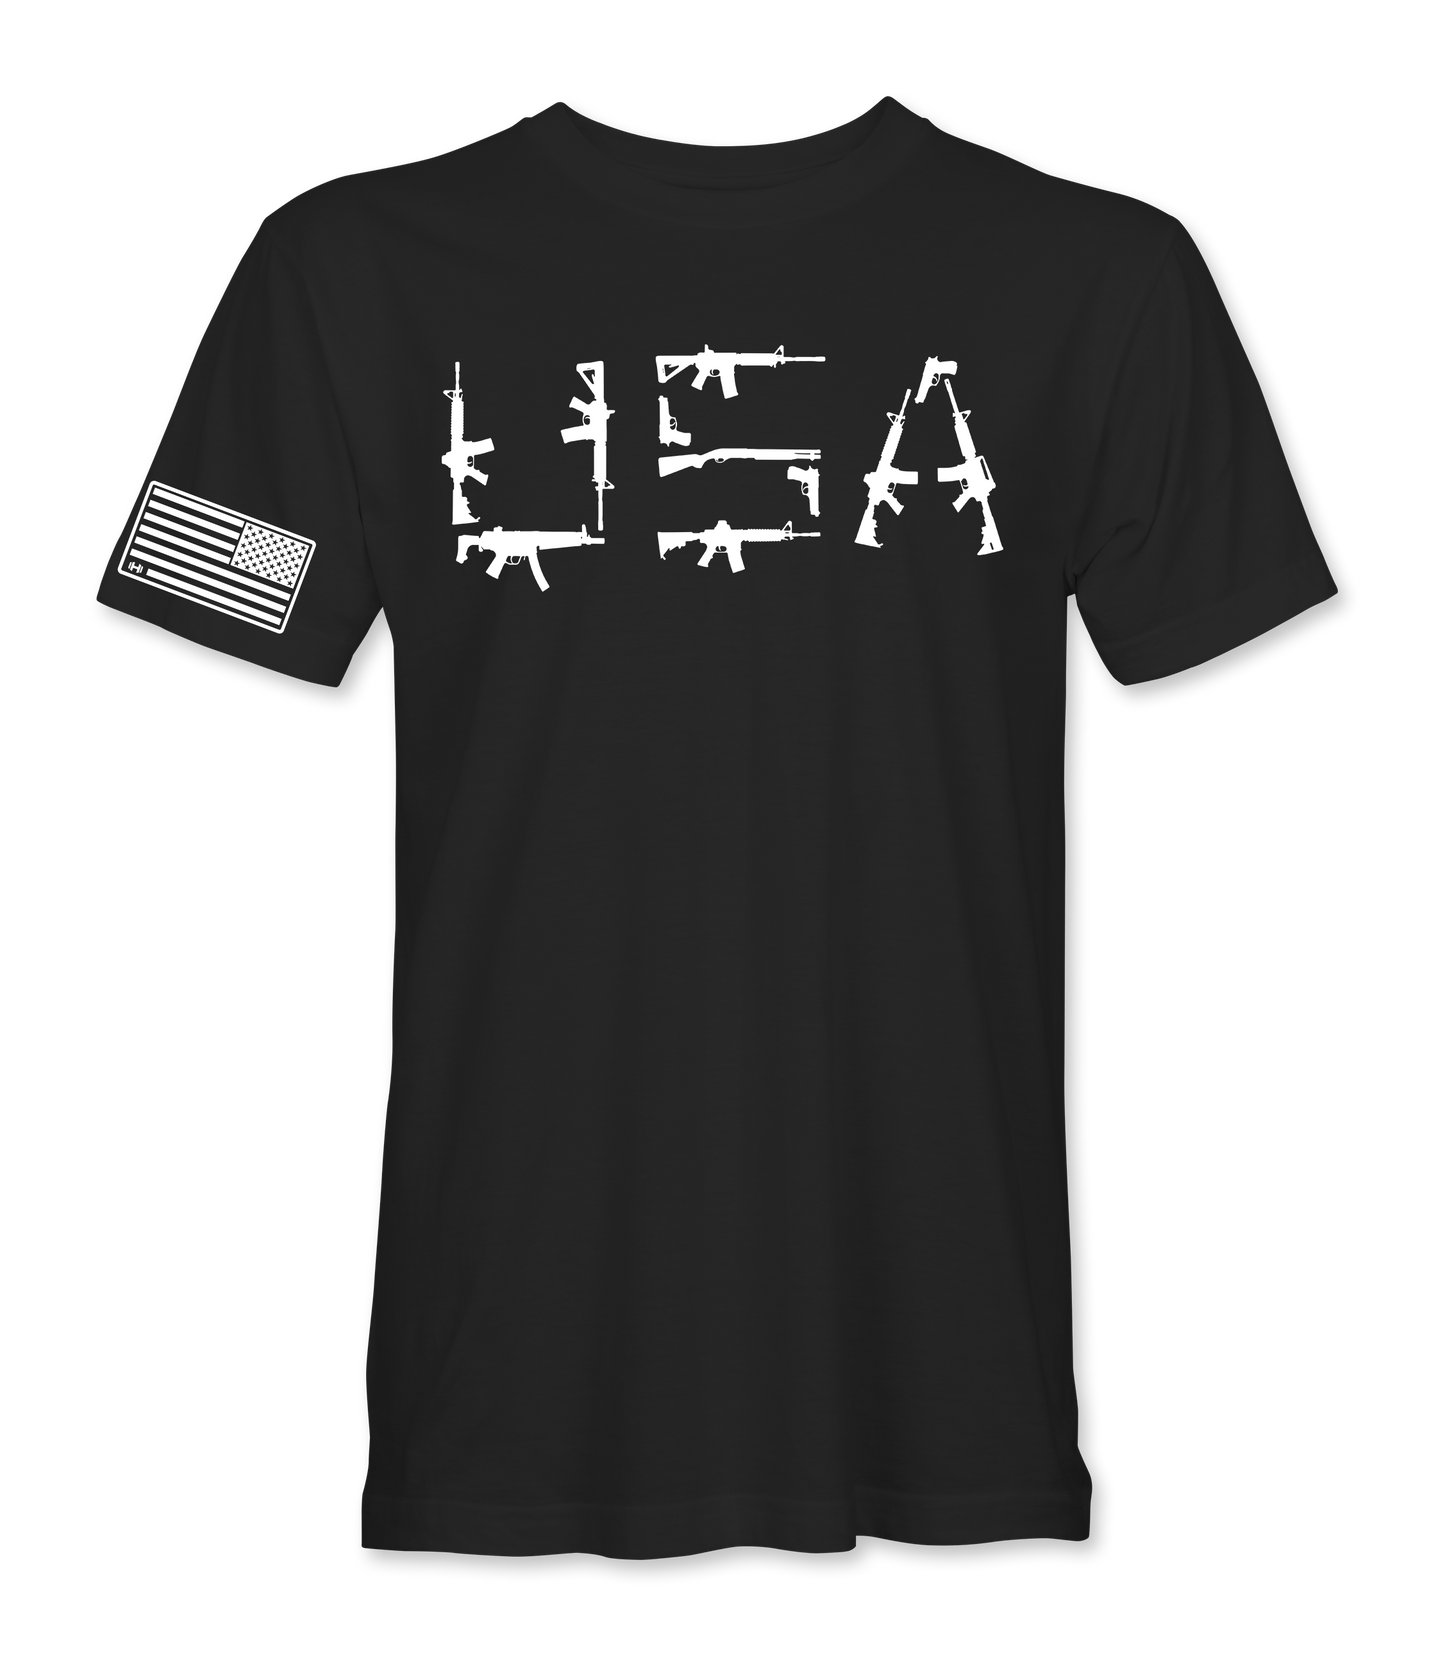 USA Gun T-Shirt